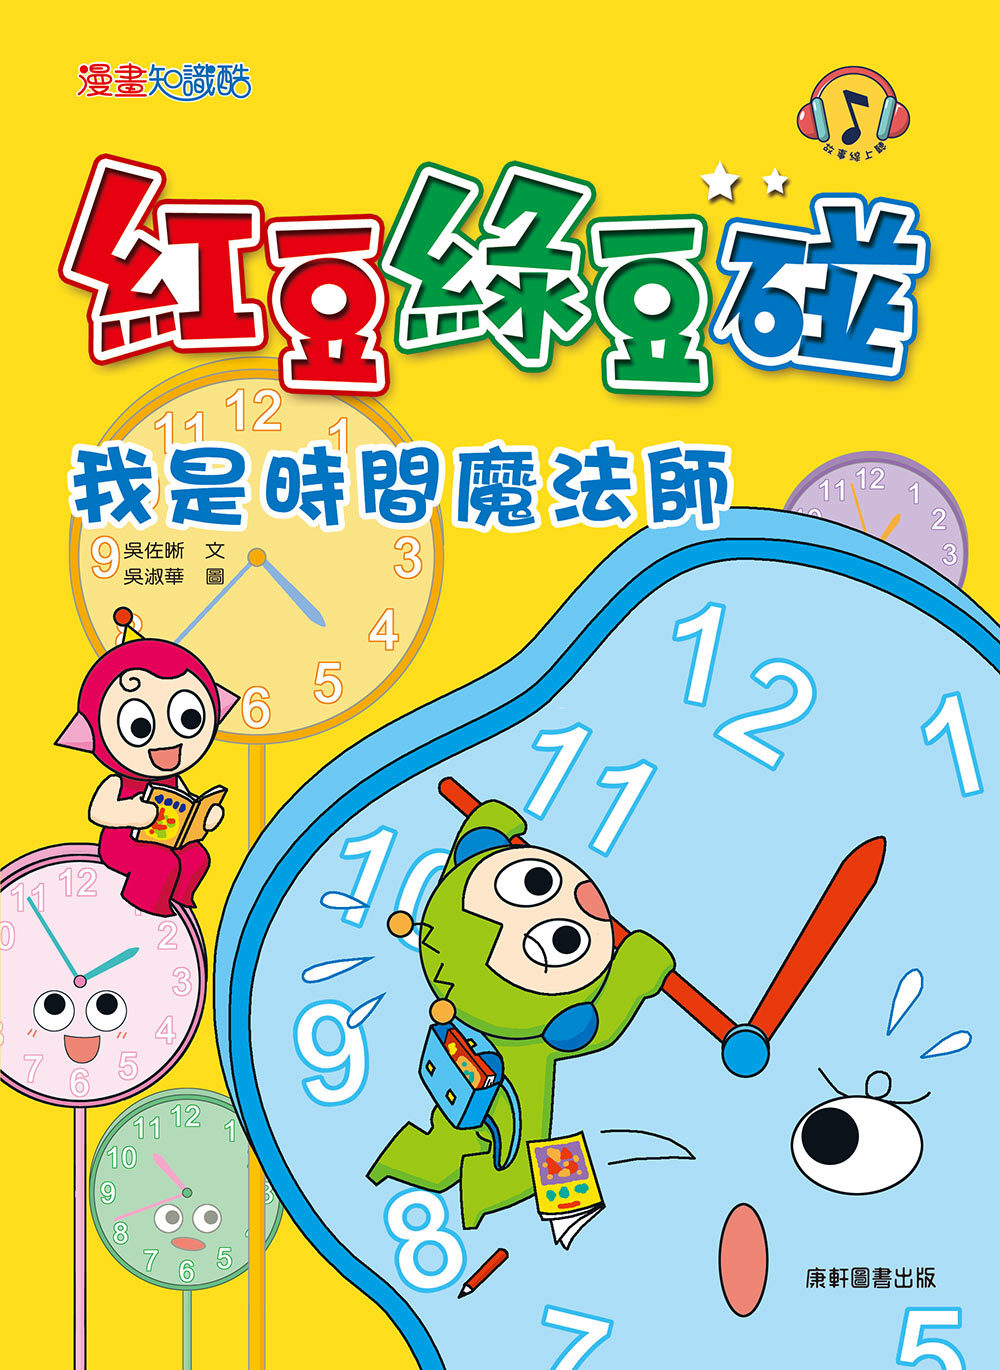 Red Bean Green Bean Manga #13: I'm a Time Magician • 紅豆綠豆碰 #13：我是時間魔法師